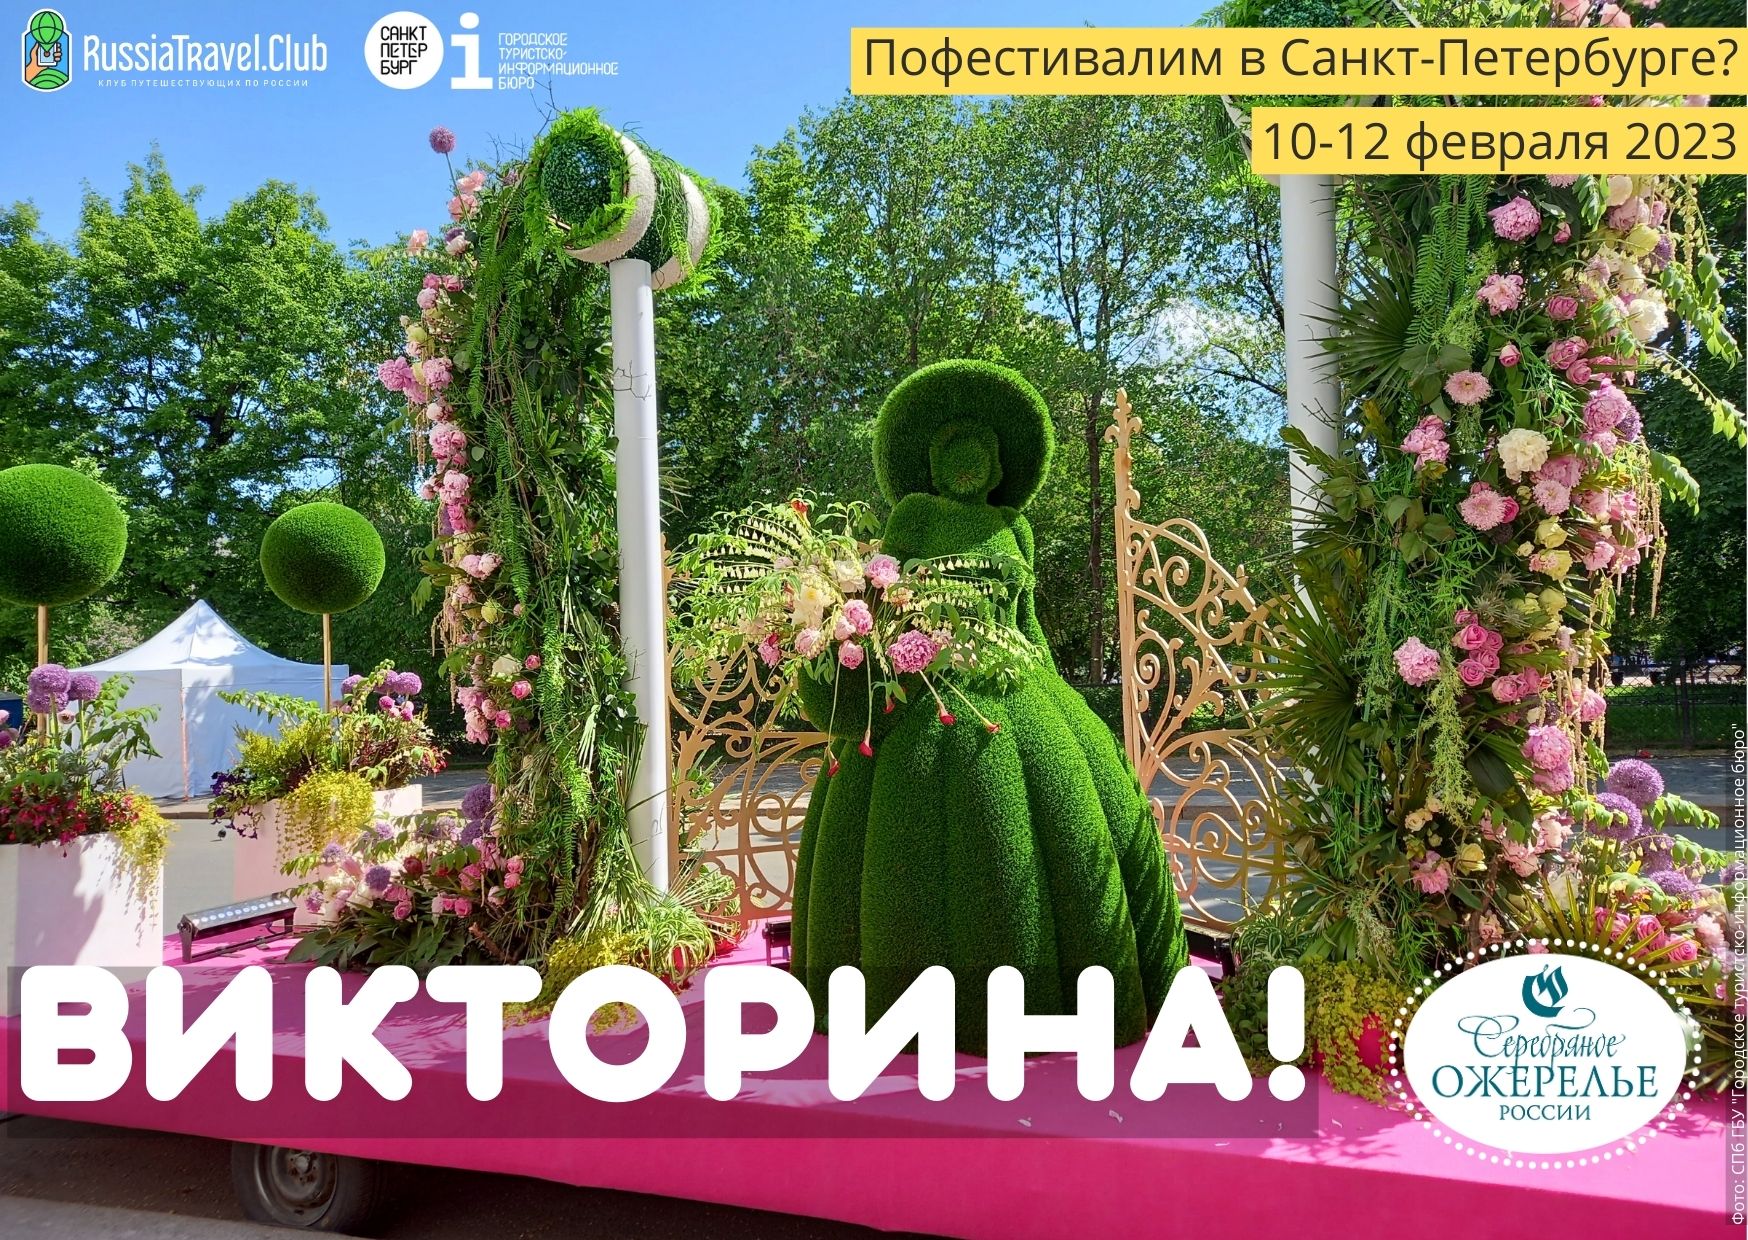 Викторина «Пофестивалим в Санкт-Петербурге?» с 10 по 12 февраля